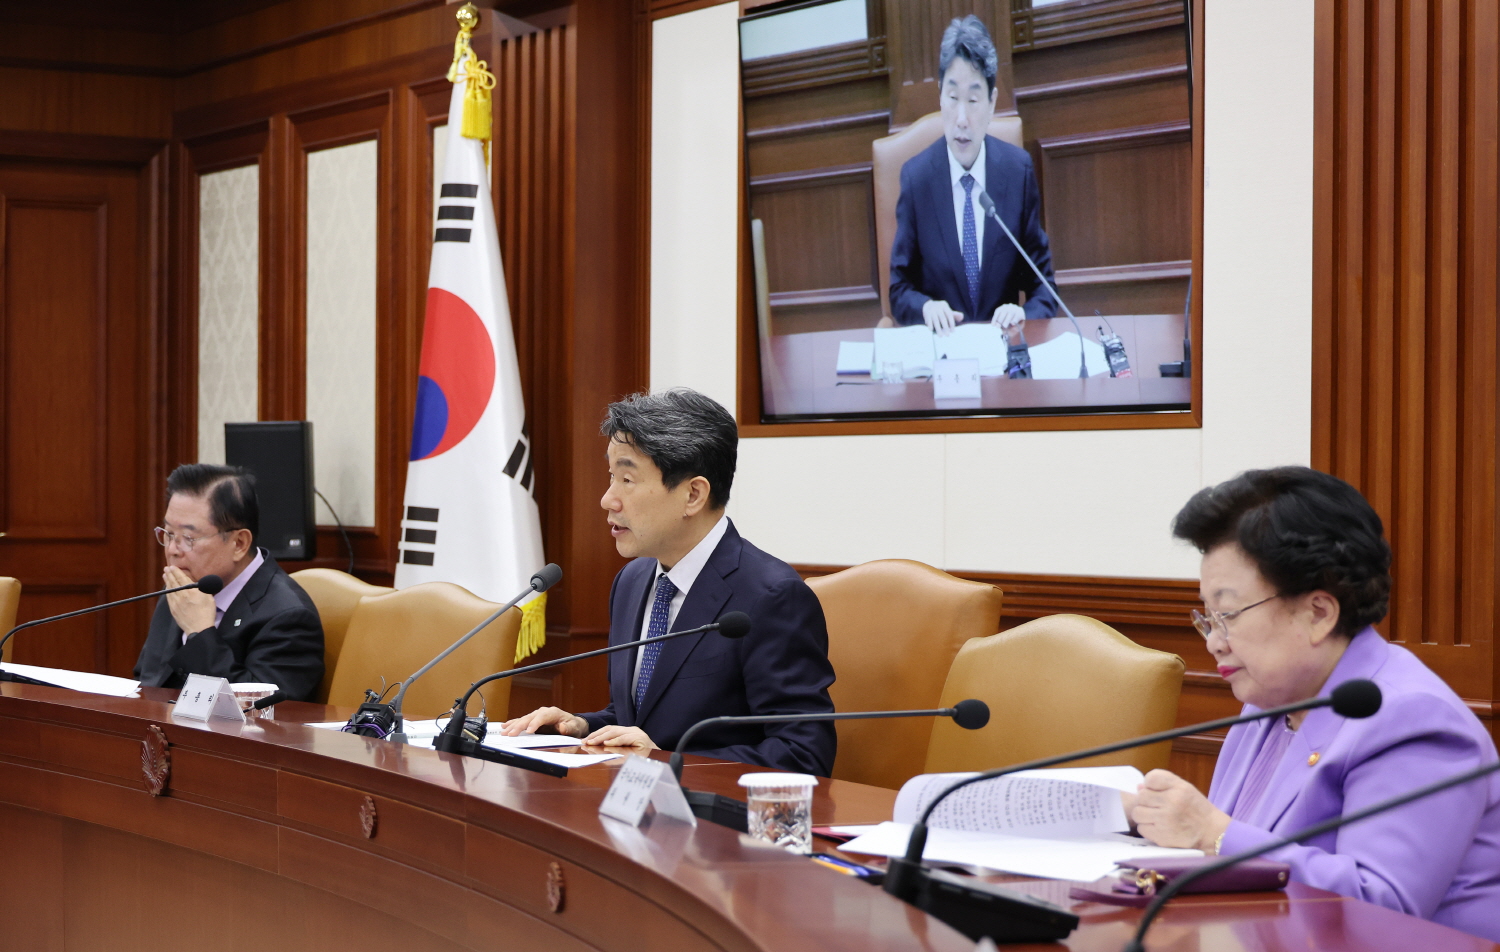 이주호 부총리 겸 교육부장관은 3월 28일(목) 서울청사에서 제3차 사회관계장관회의를 개최